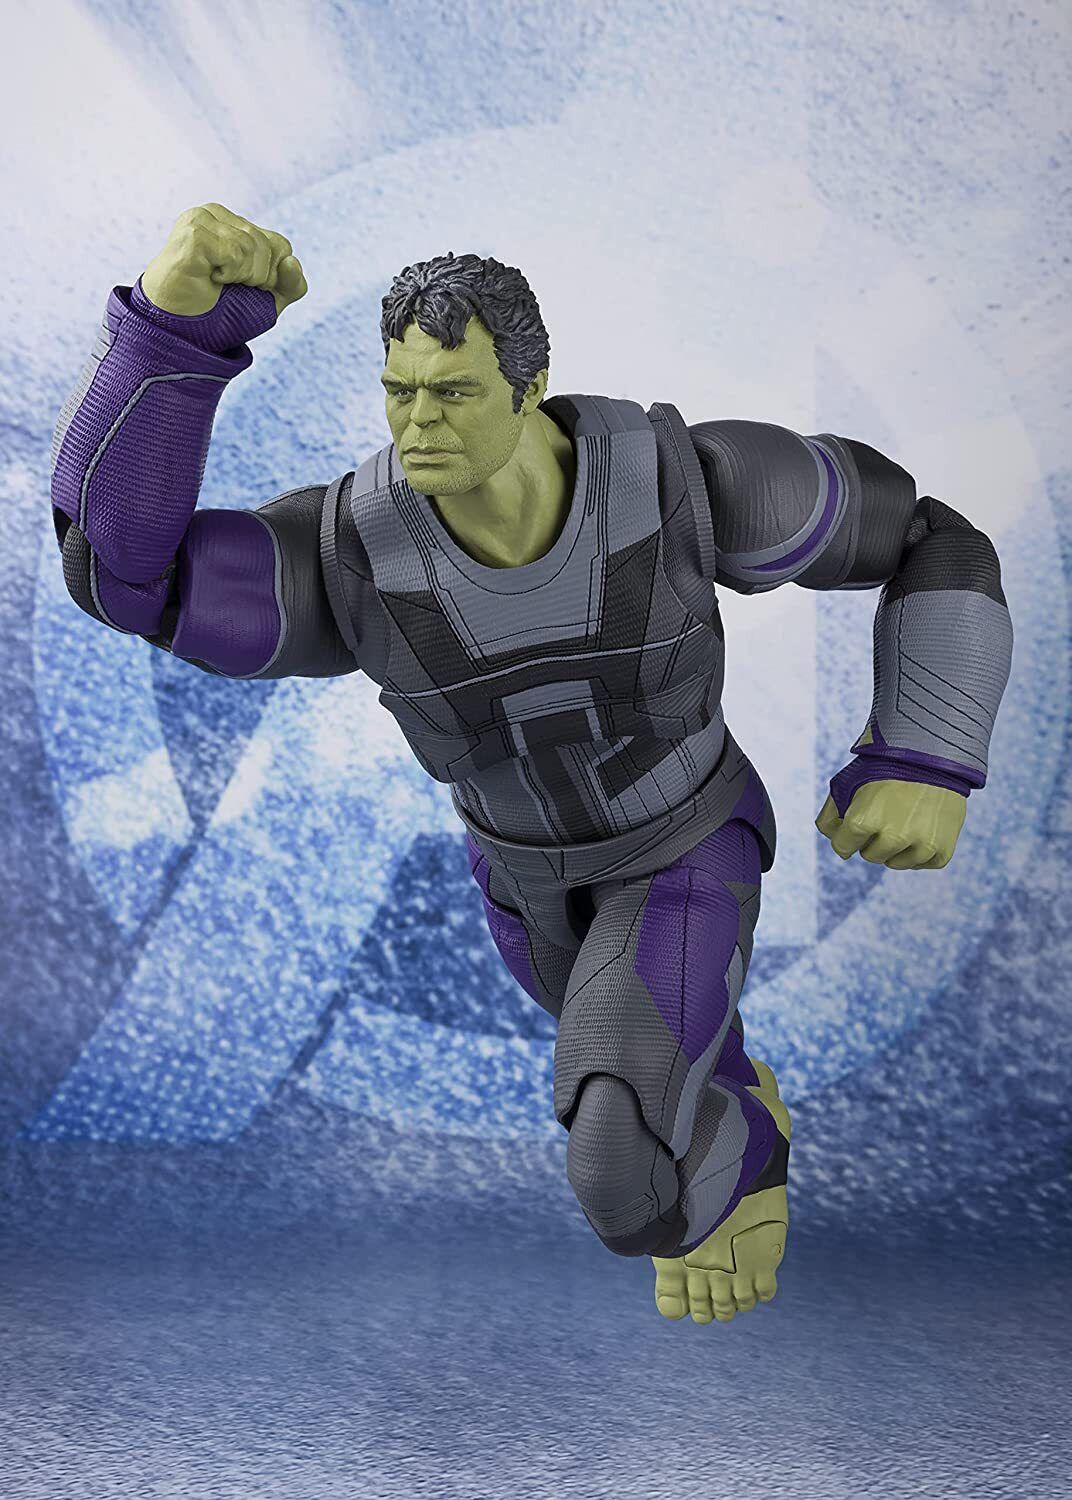 Avengers: Endgame Hulk S.H.Figuarts